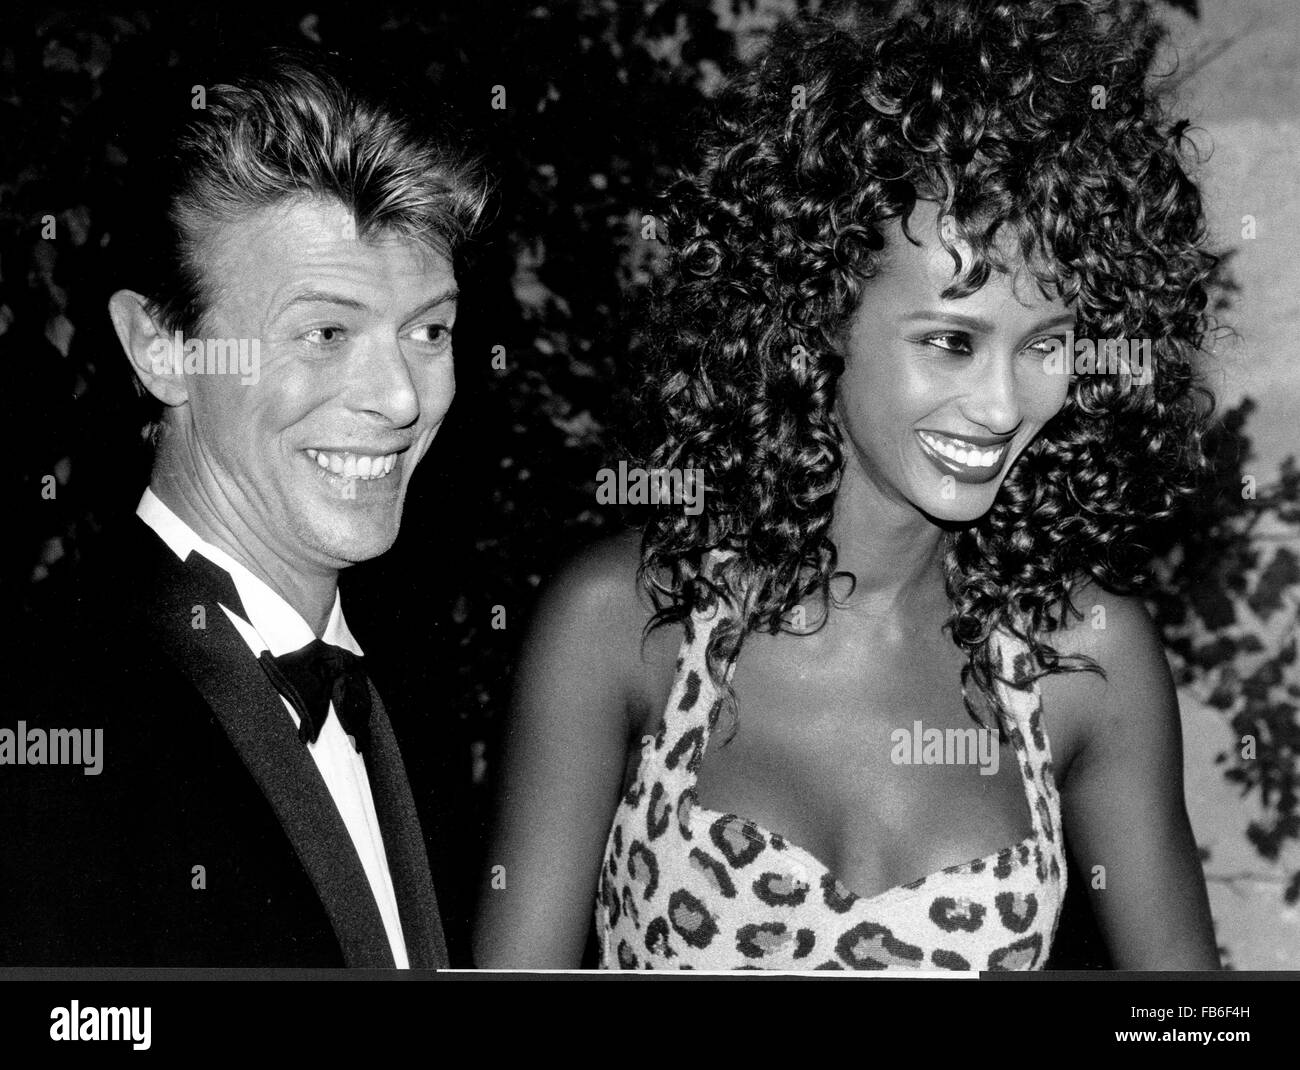 PICS FILE: David Bowie, infinitamente variabile, ferocemente forward-looking cantautore che ha insegnato a generazioni di musicisti circa la potenza del dramma, immagini e personae, morto domenica circondato dalla famiglia. Egli è stato 69. Bowie morì dopo diciotto mesi di battaglia con il cancro. Nella foto: Sett. 20, 1991 - Parigi, Francia - cantante pop David Bowie, nato il 8 gennaio 1947, con il suo modello ragazza IMAN alla presentazione del film "Anima Mundi, ' sponsorizzato da Paolo Bulgari. (Credito Immagine: © Keystone Press Agency/Keystone USA via ZUMAPRESS. Credito: ZUMA Press, Inc./Alamy Live News Foto Stock